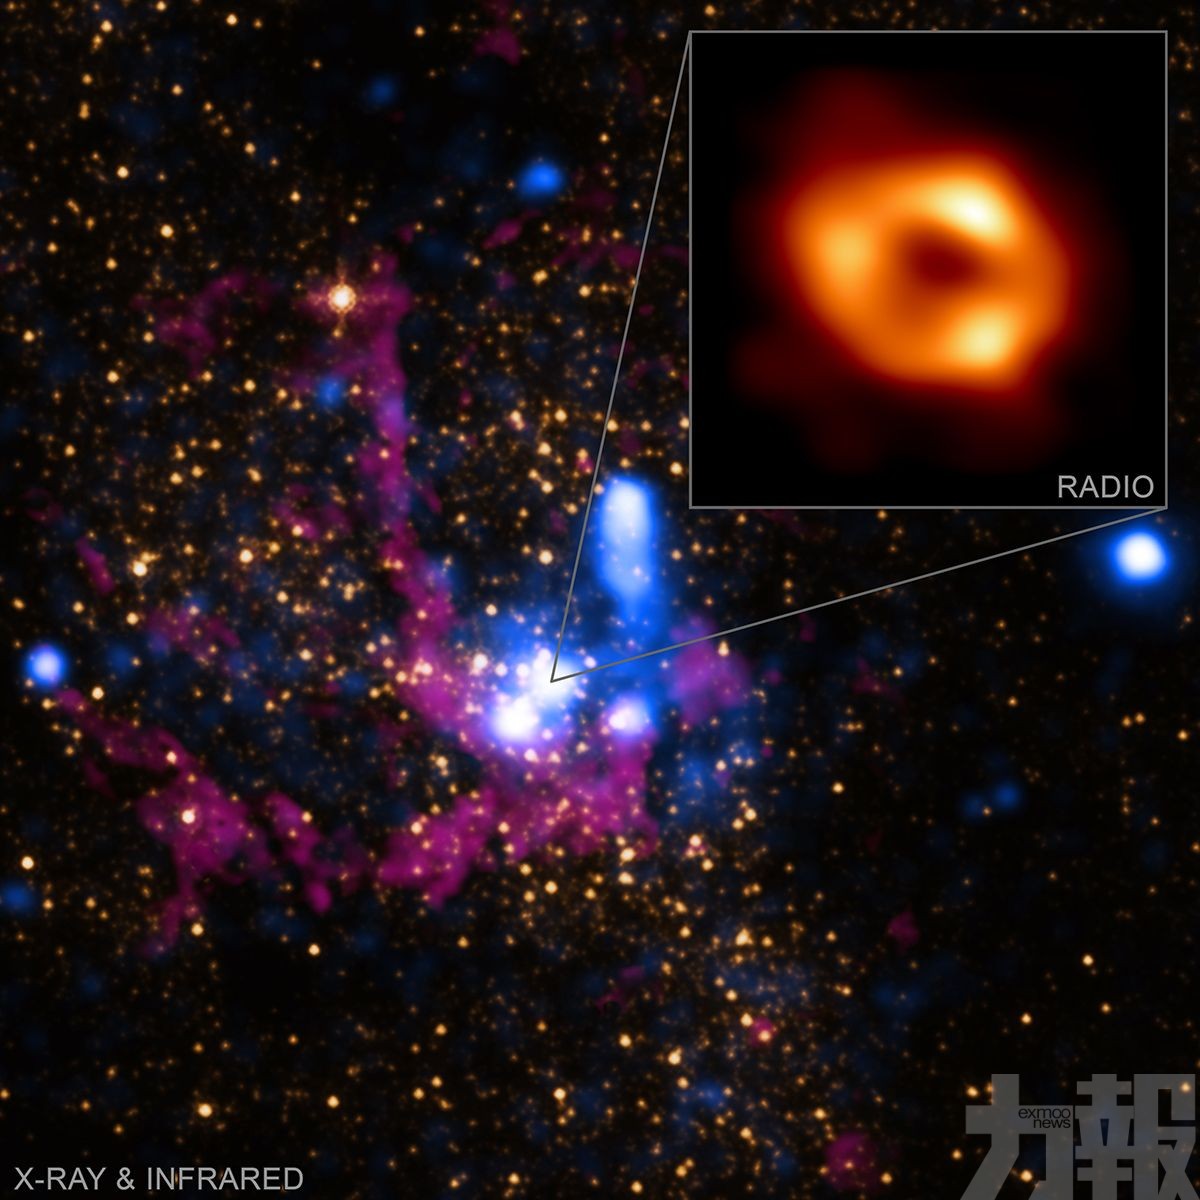 銀河系中心超大質量黑洞首張照片